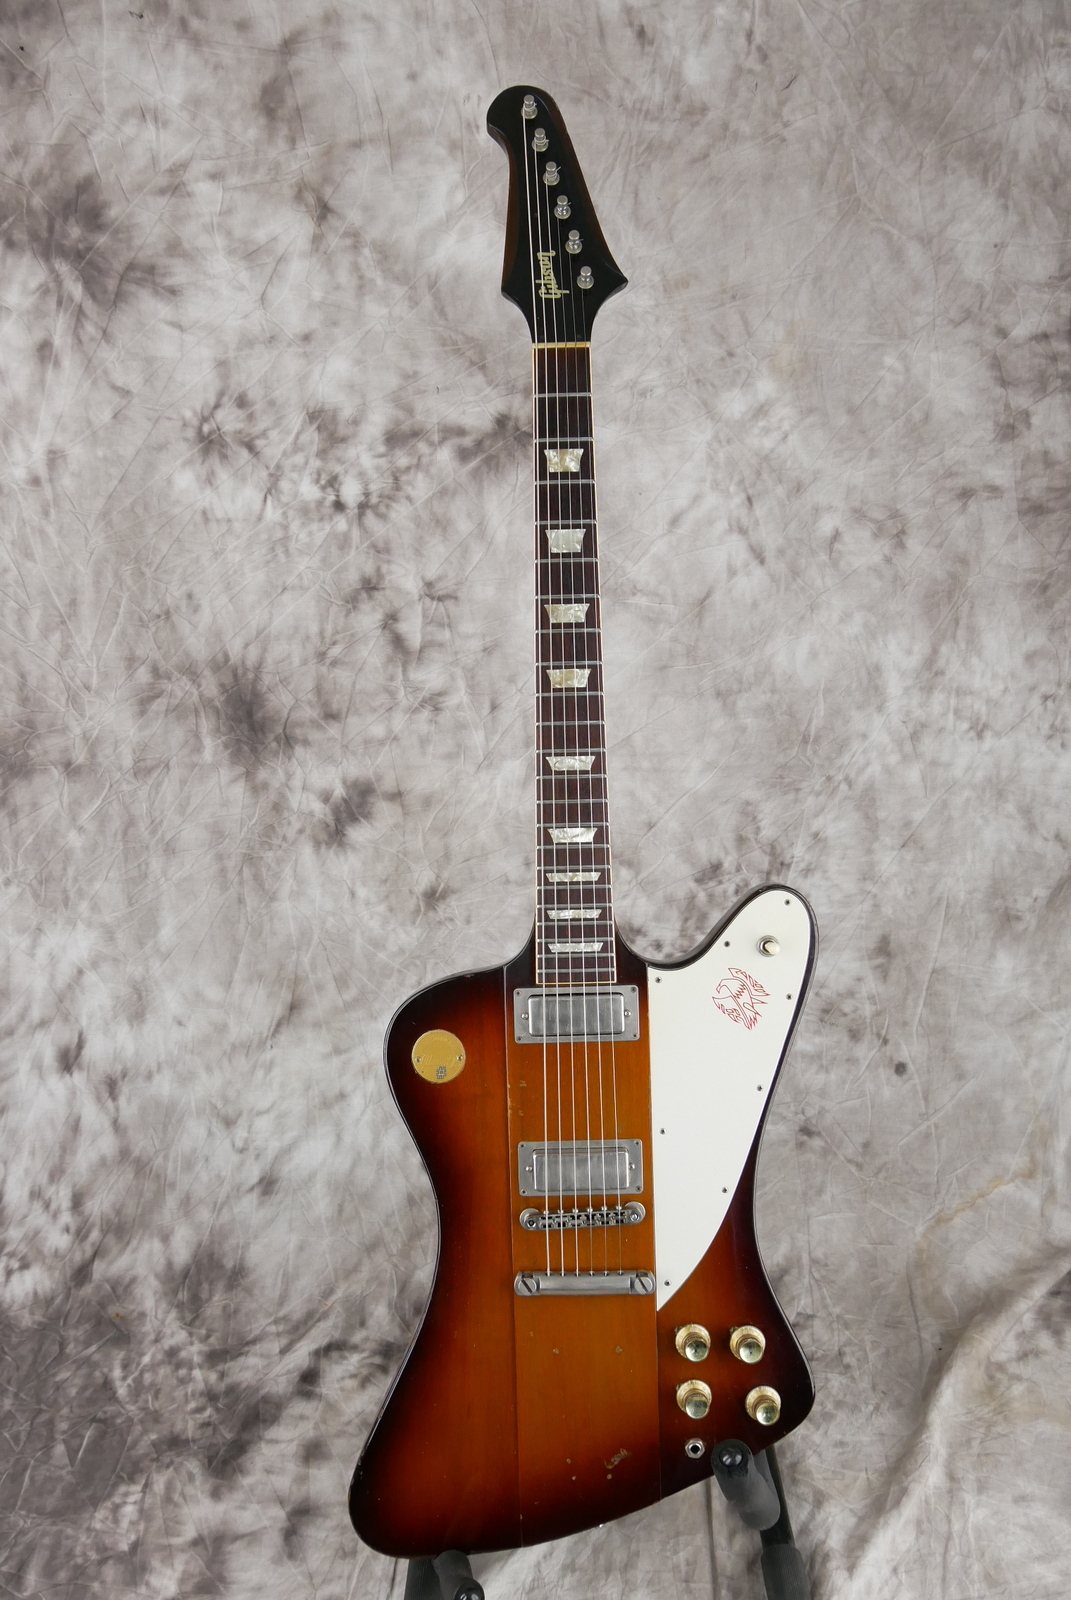 Gibson_Firebird_V_Medallion_limited_edition_sunburst_1972-001.JPG